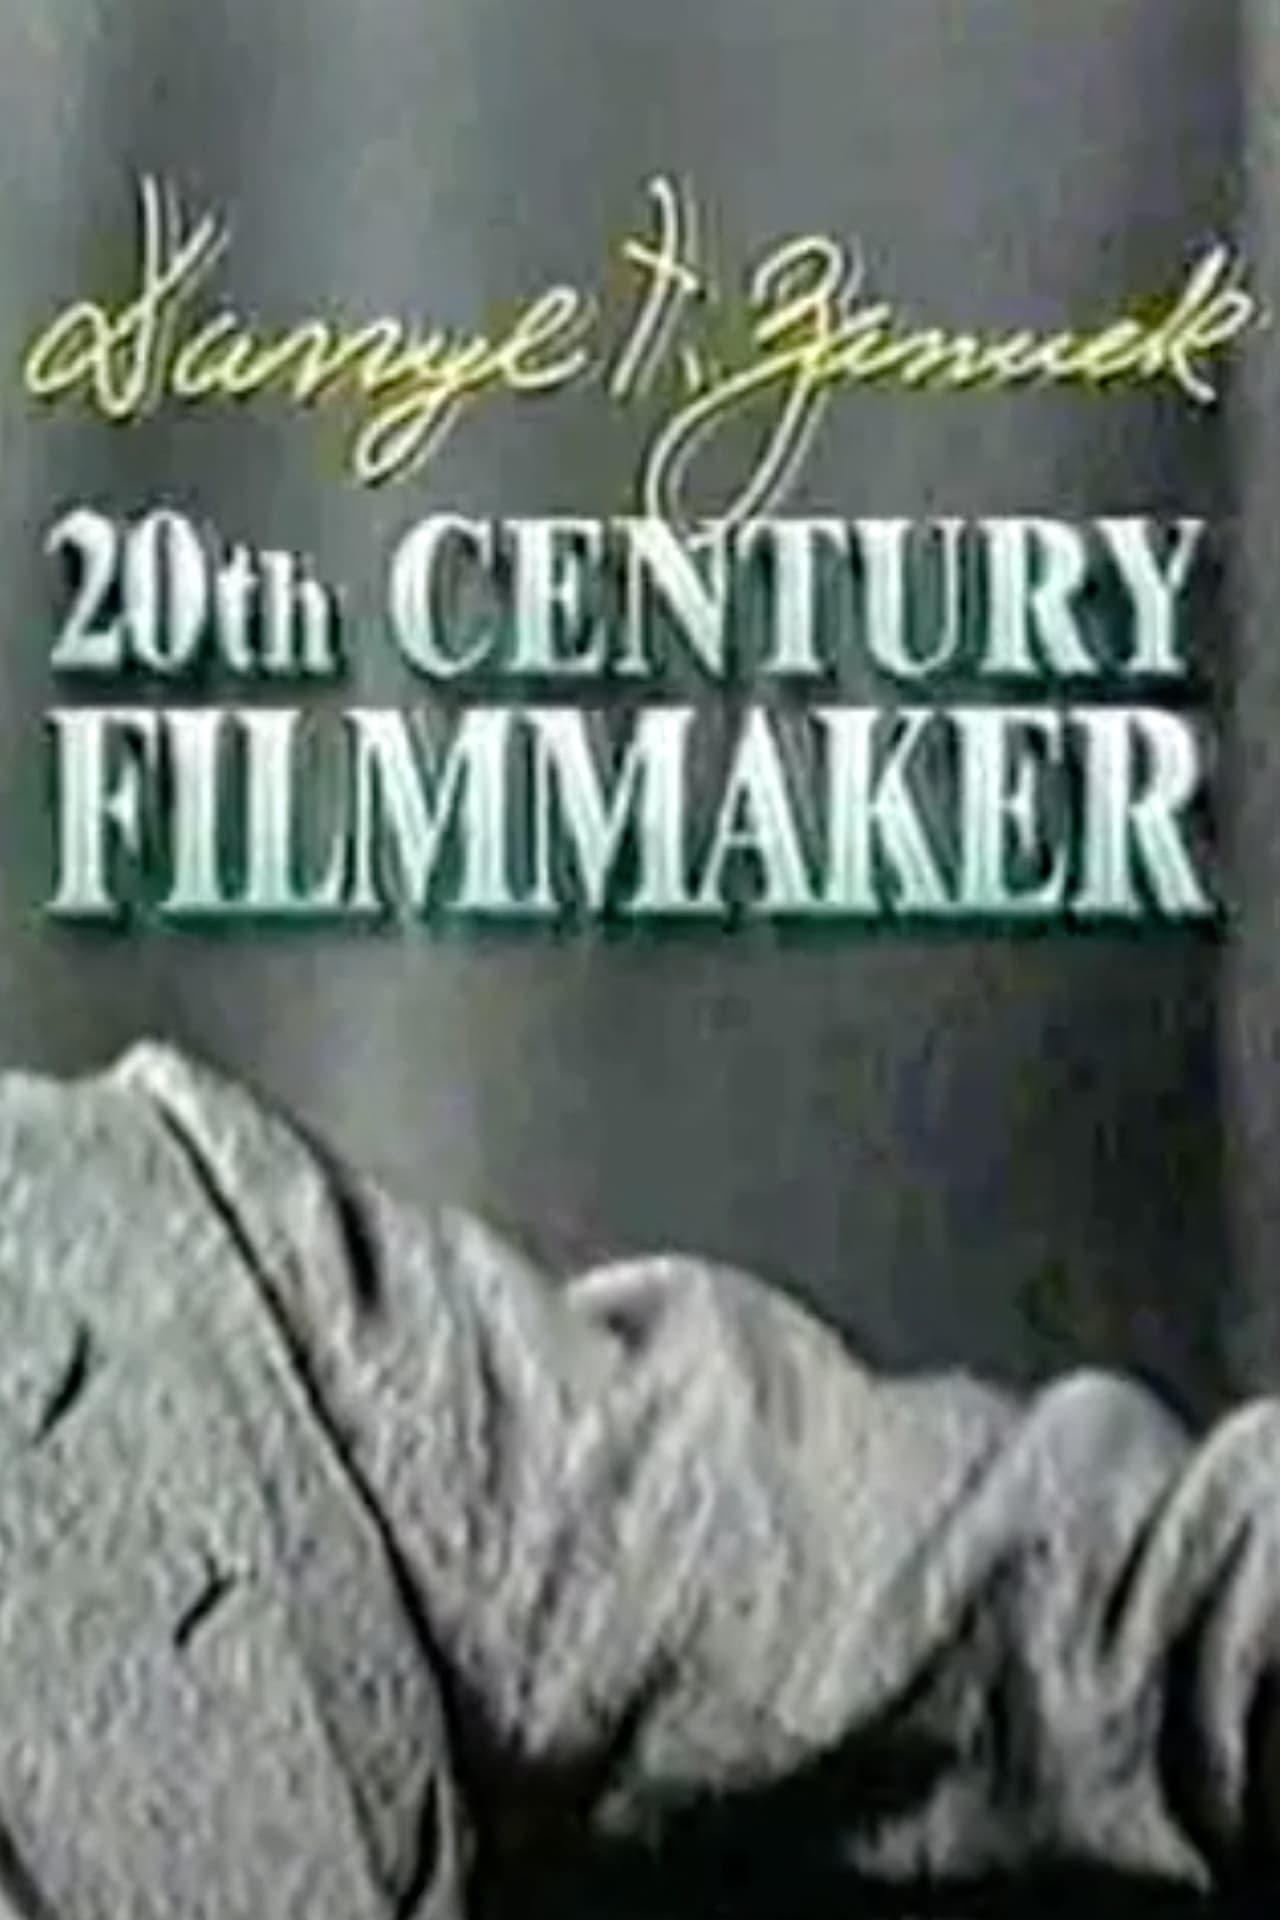 Darryl F. Zanuck: 20th Century Filmmaker poster